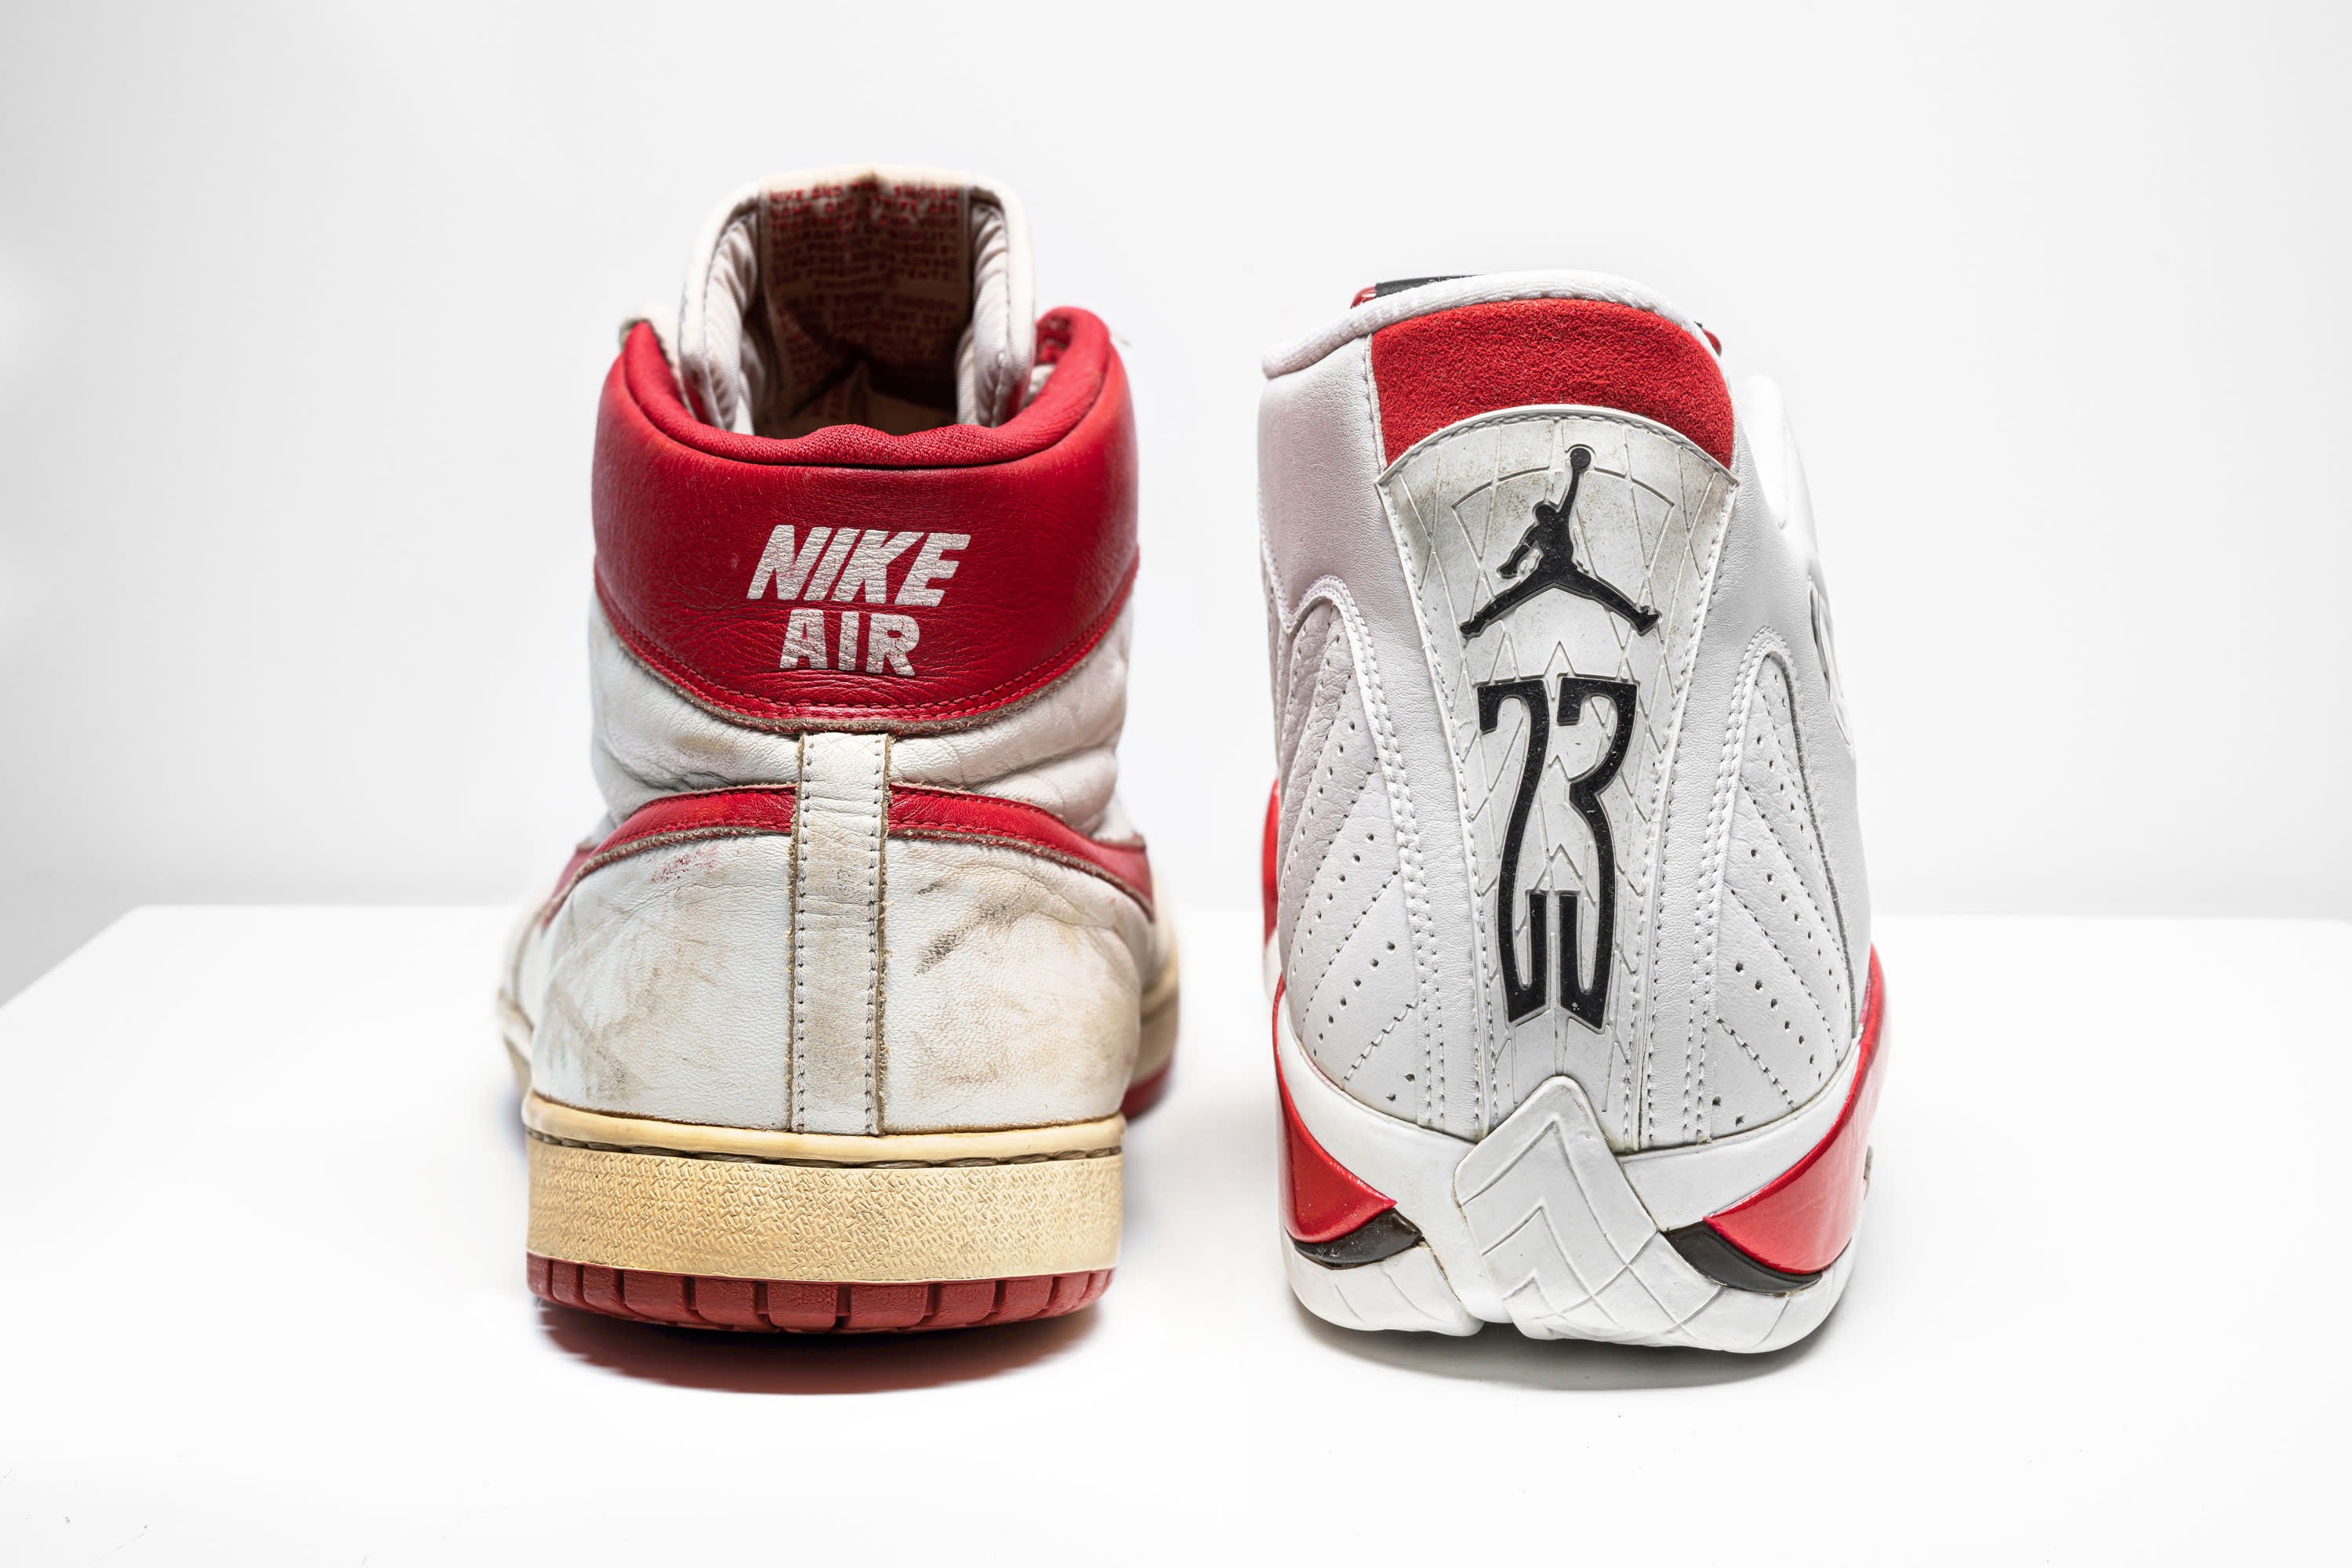 nike air jordan shoes for sale